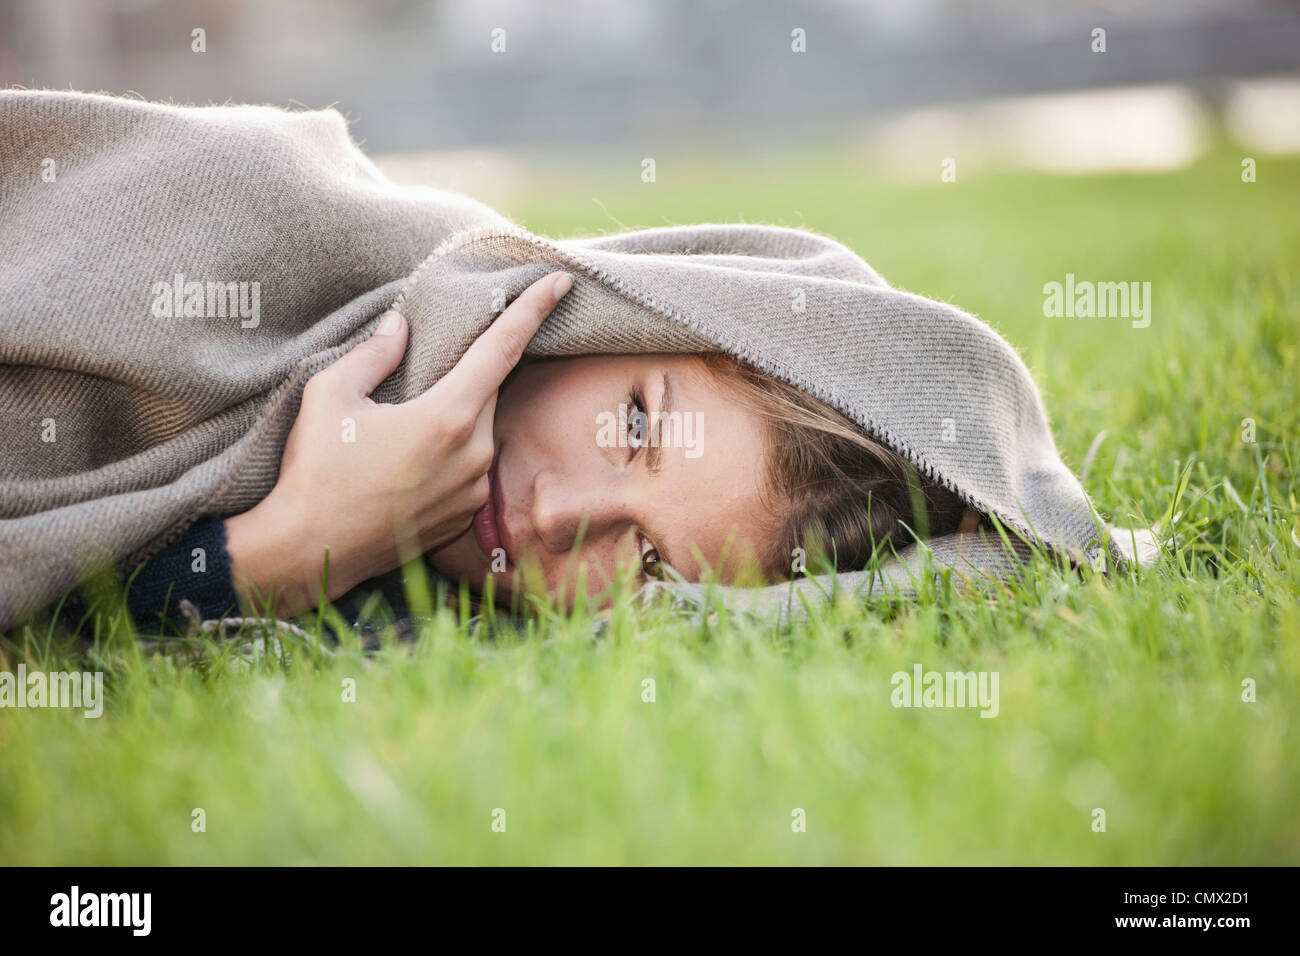 Deutschland, Köln, junge Frau liegt im Rasen, Porträt Stockfoto